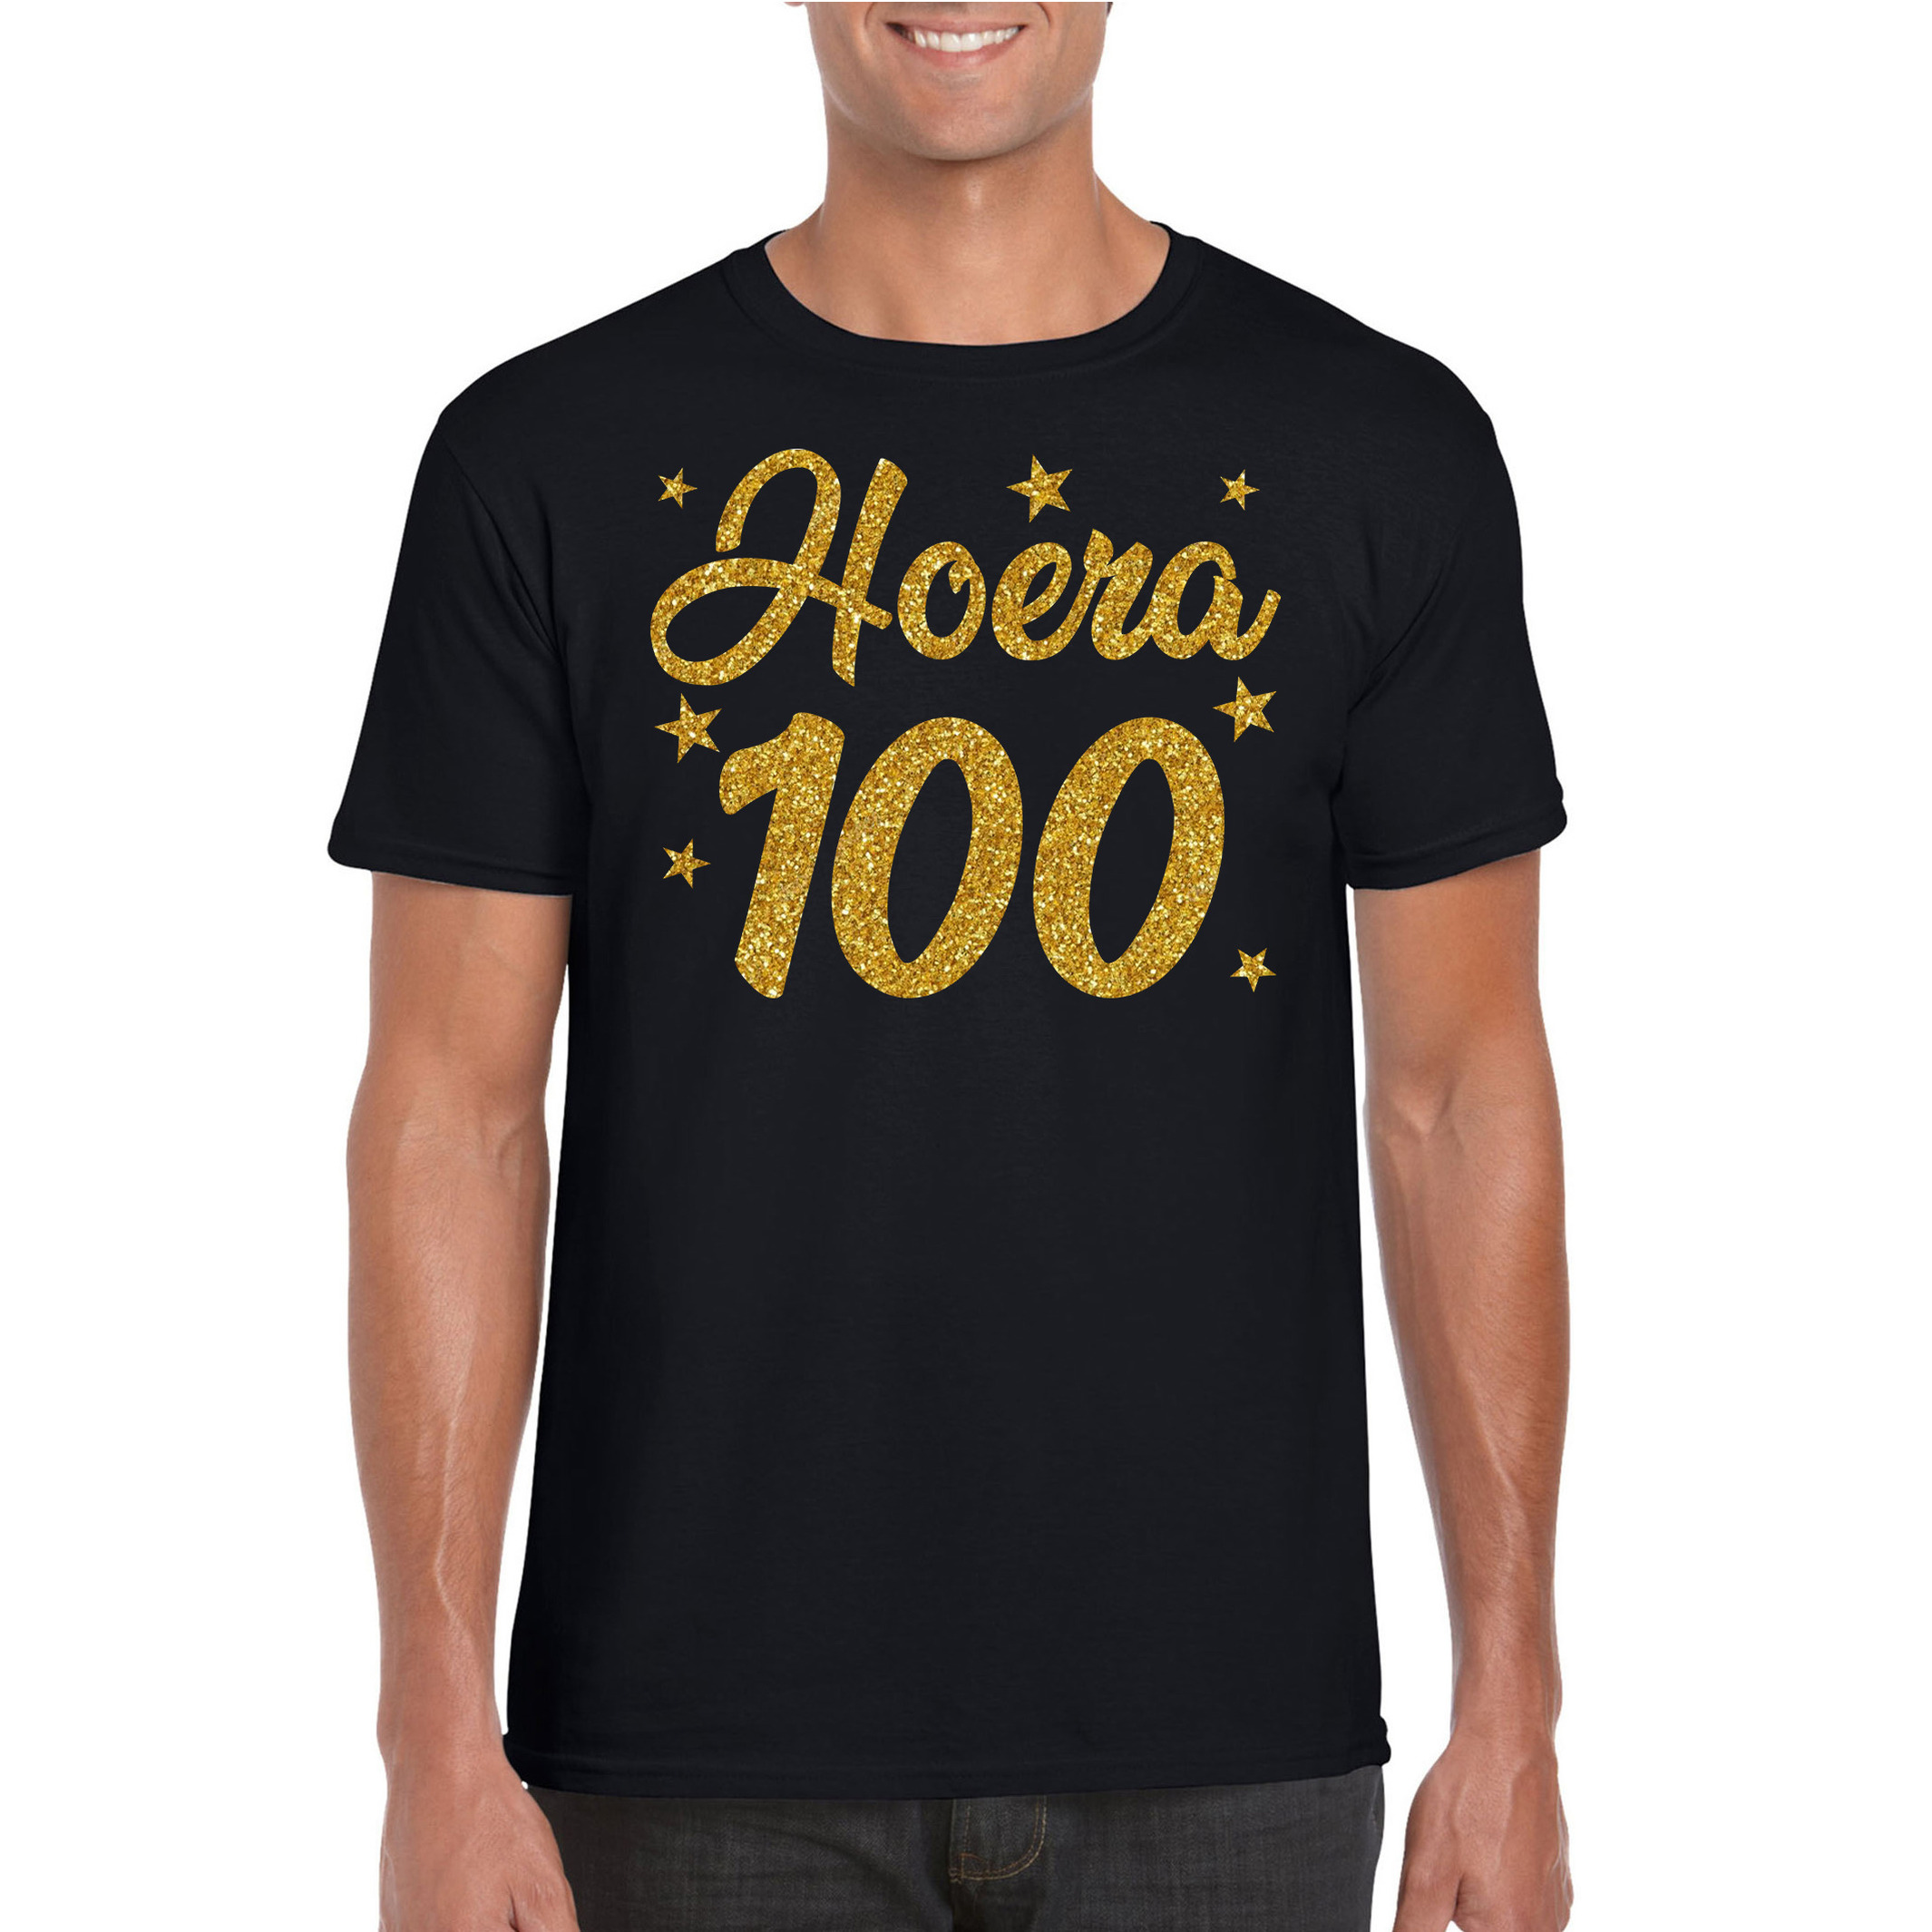 Hoera 100 jaar verjaardag cadeau t-shirt goud glitter op zwart heren